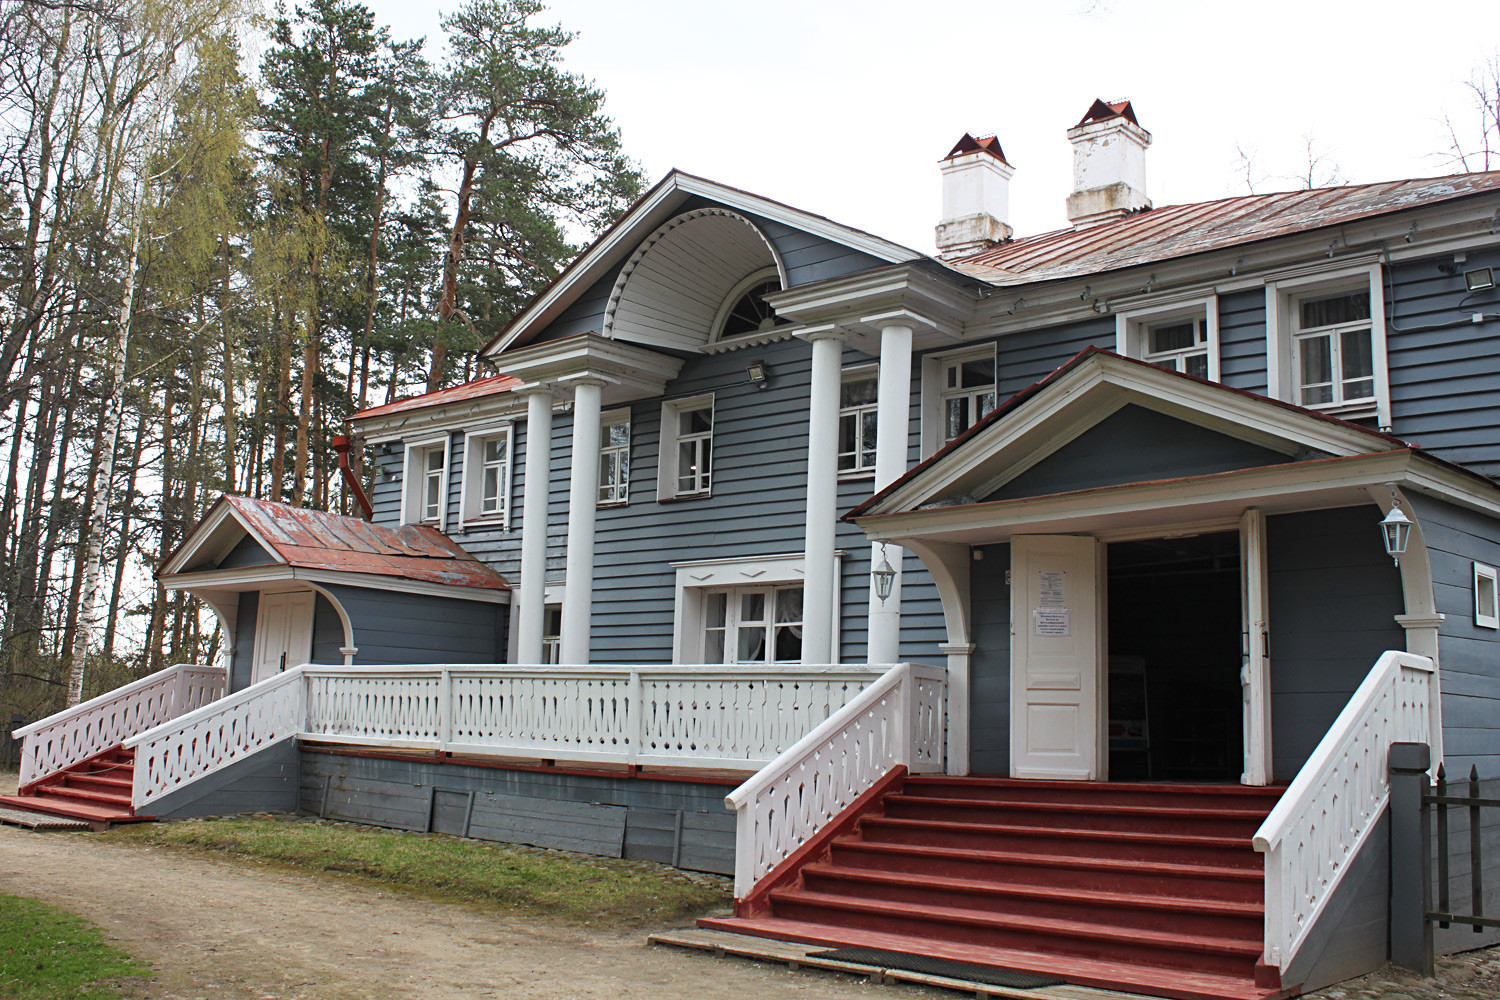 Kuća u kojoj je Ostrovski živio i pisao svoje drame.